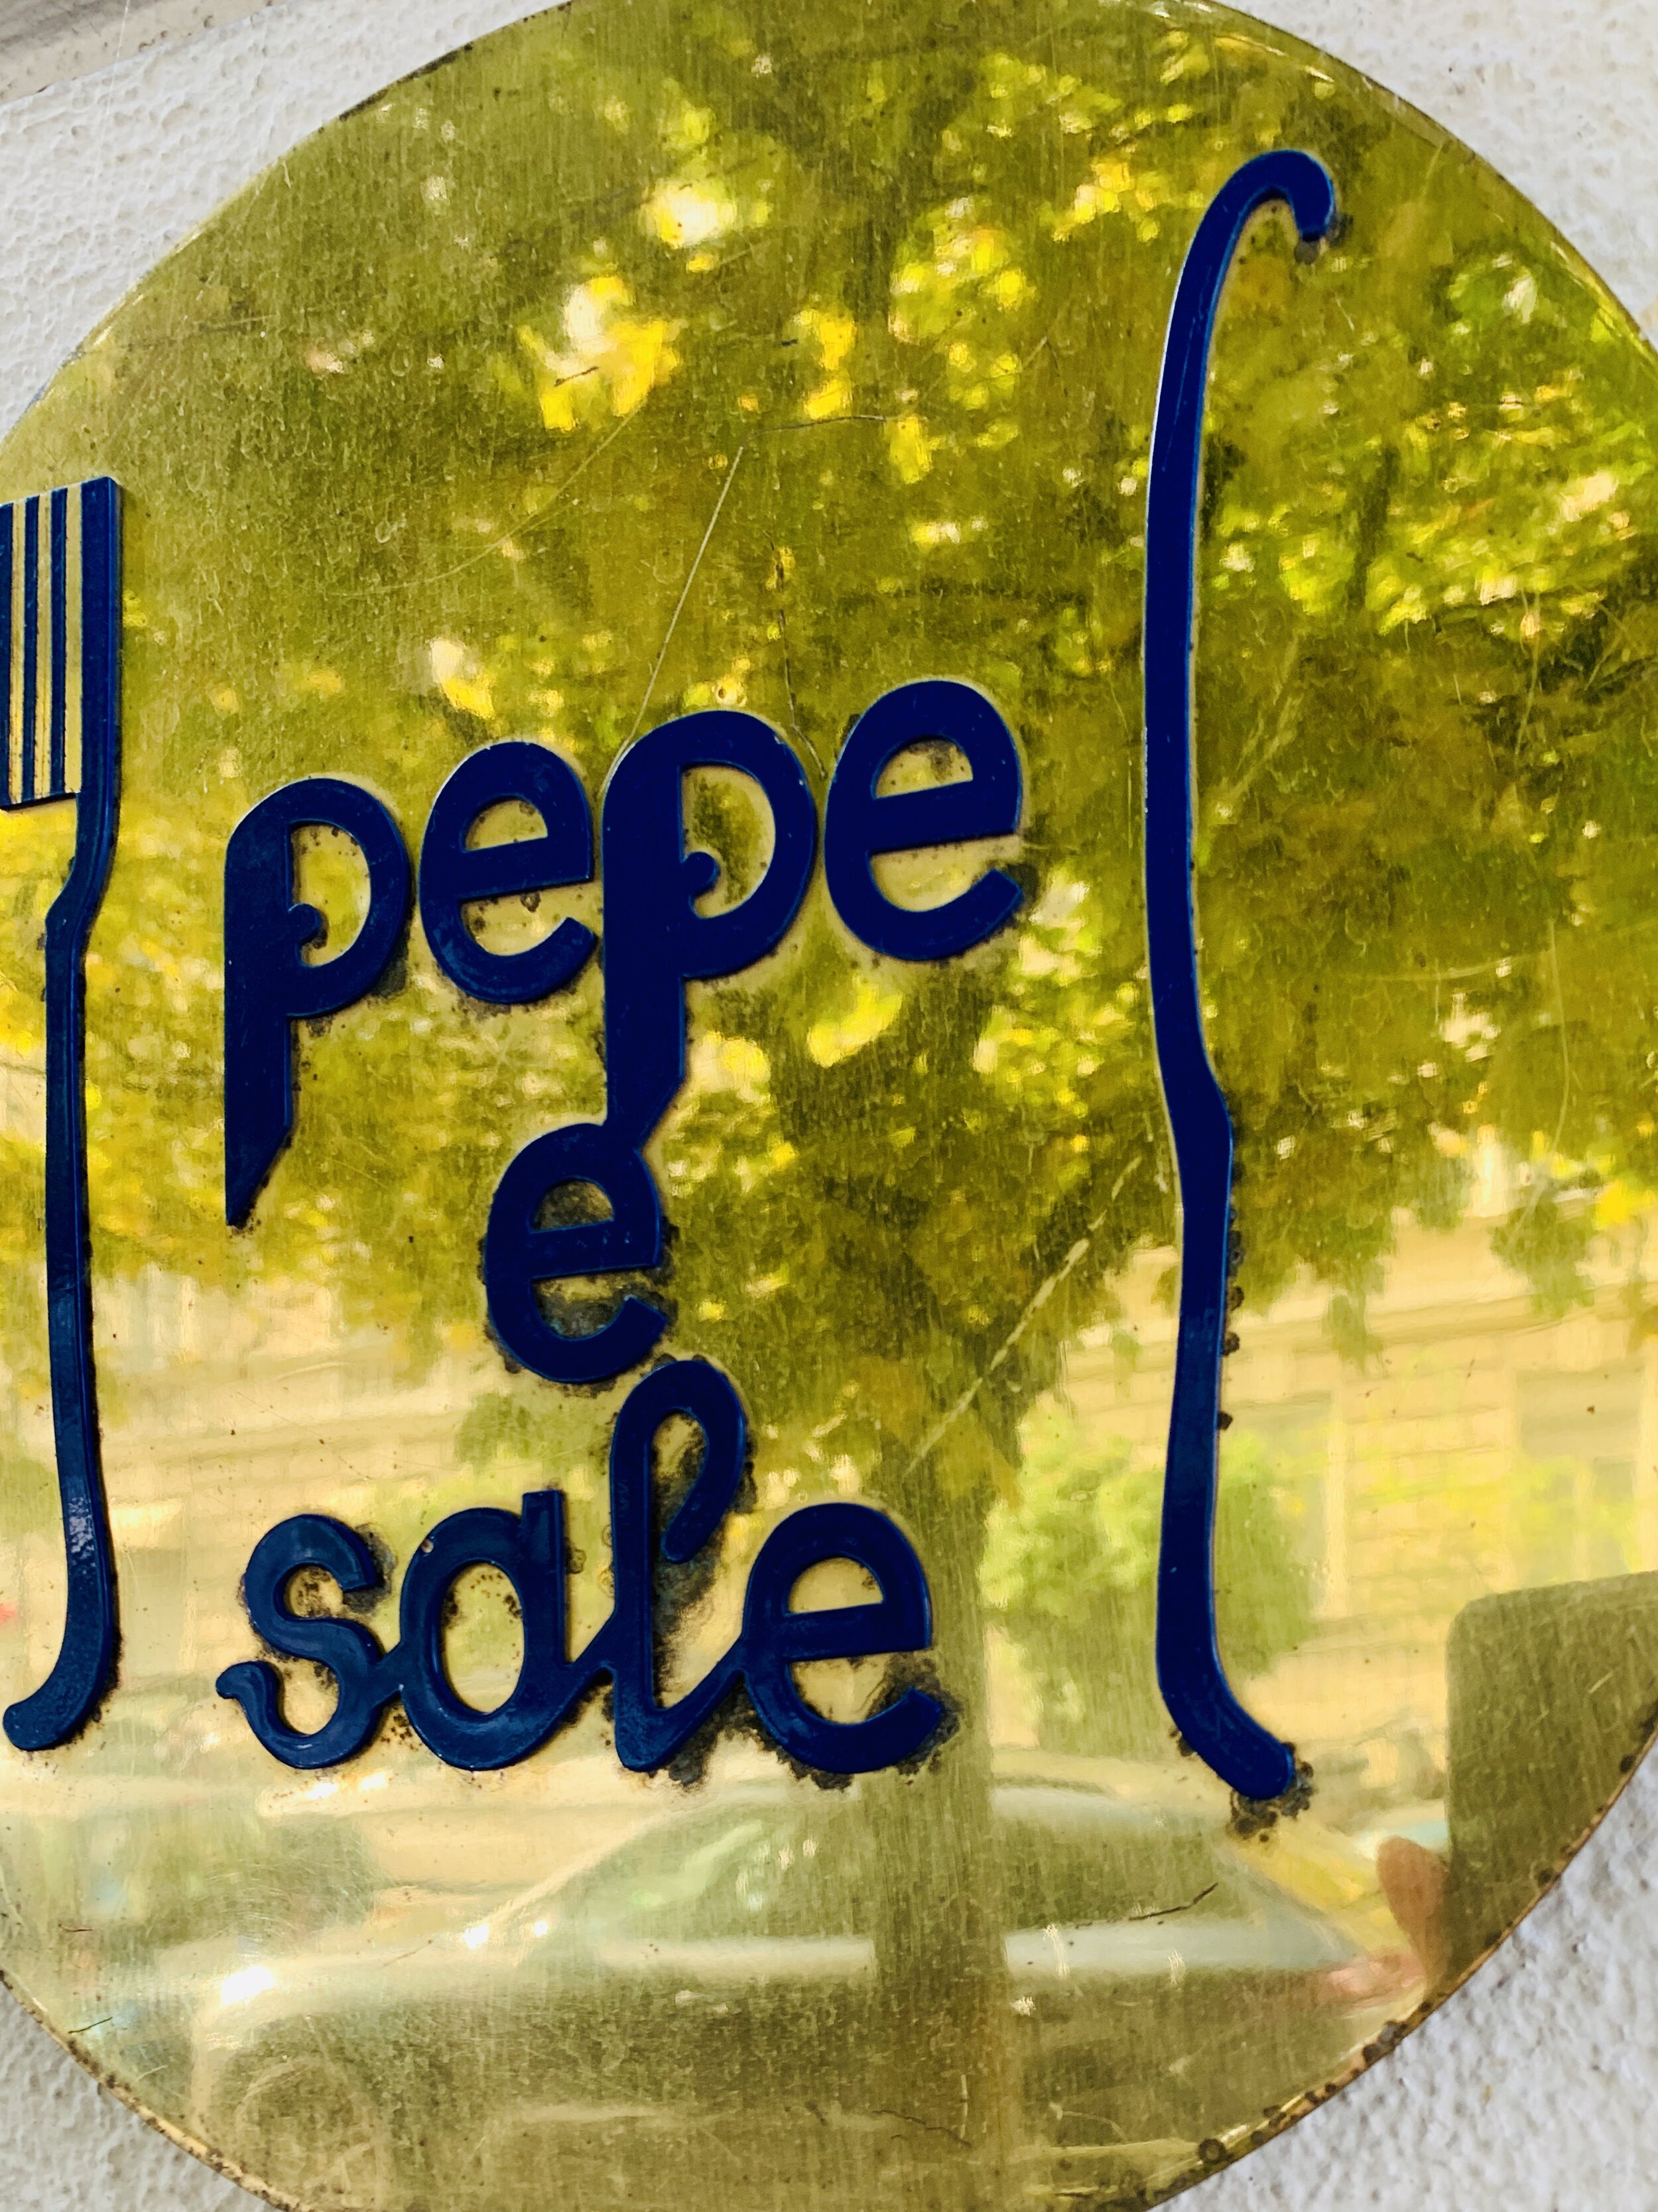 Pepe e Sale München Pasta_1.jpg